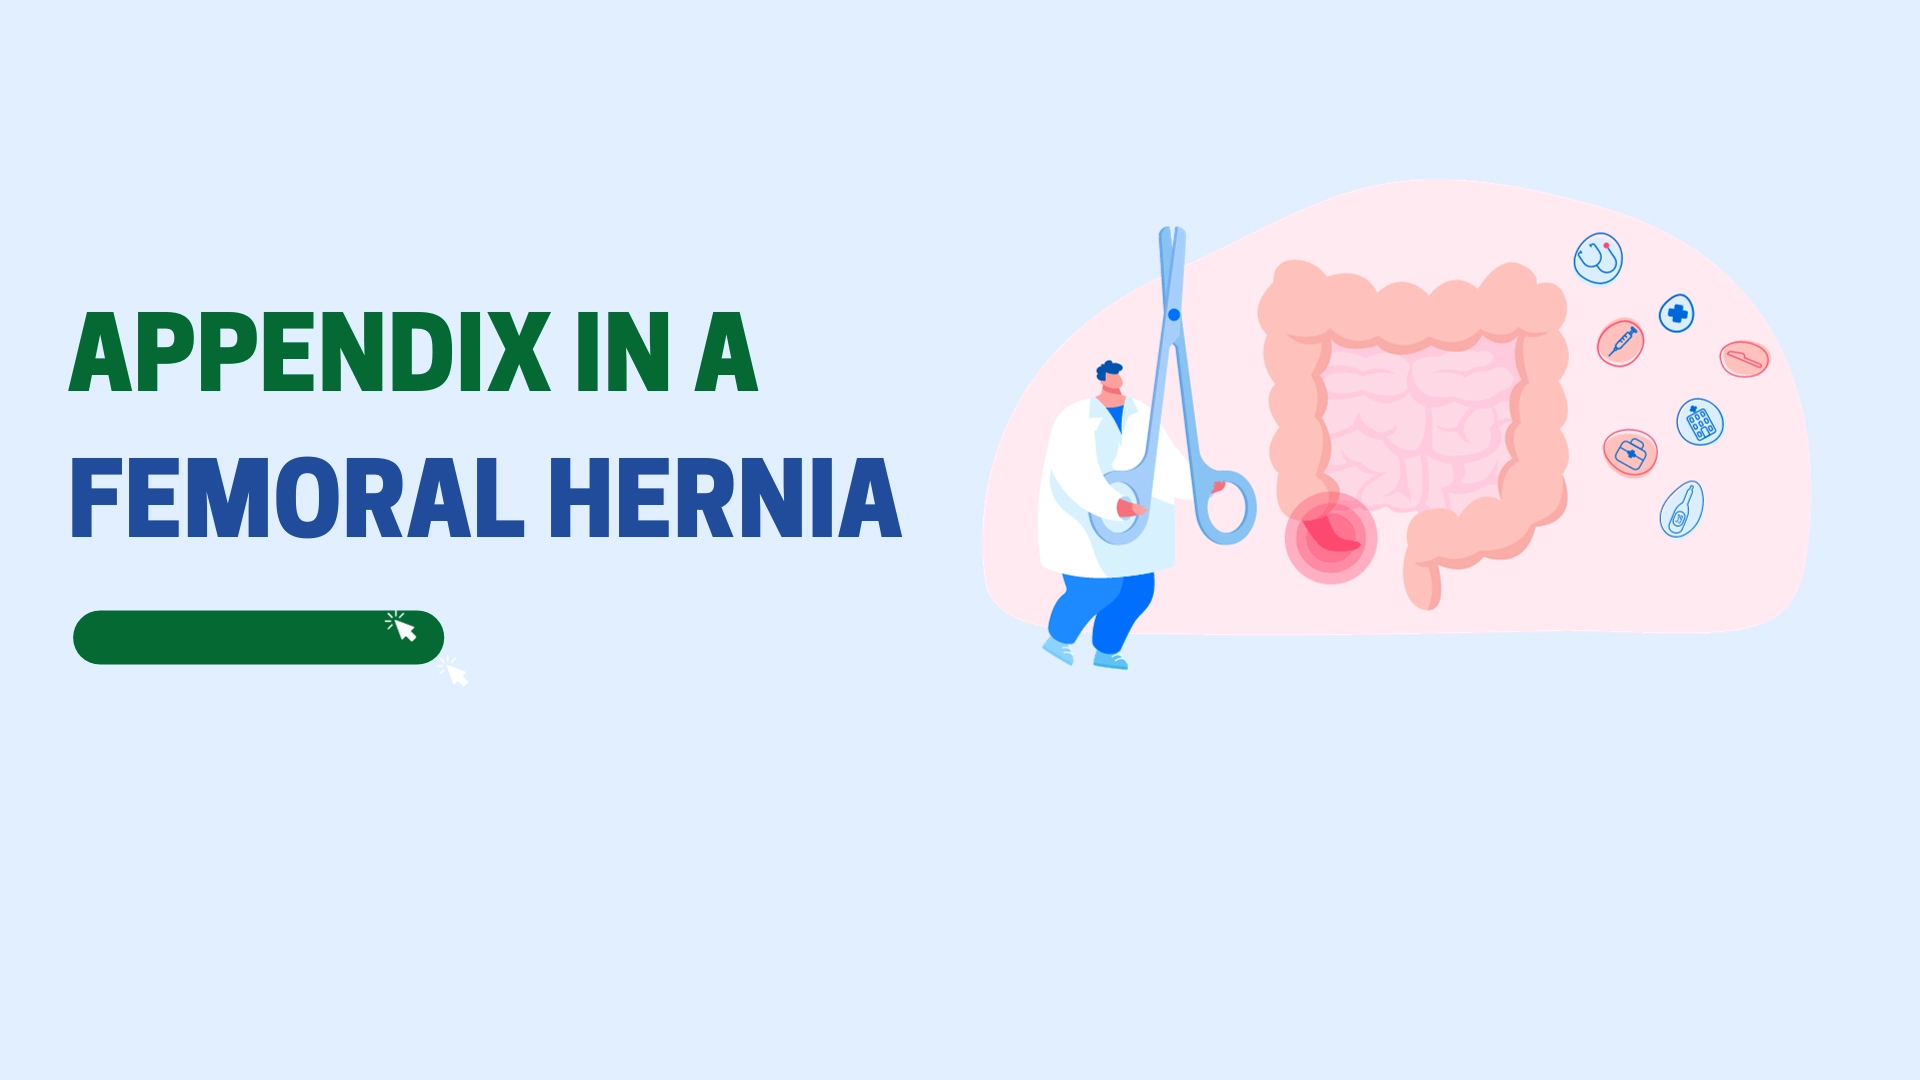 Appendix in a Femoral Hernia